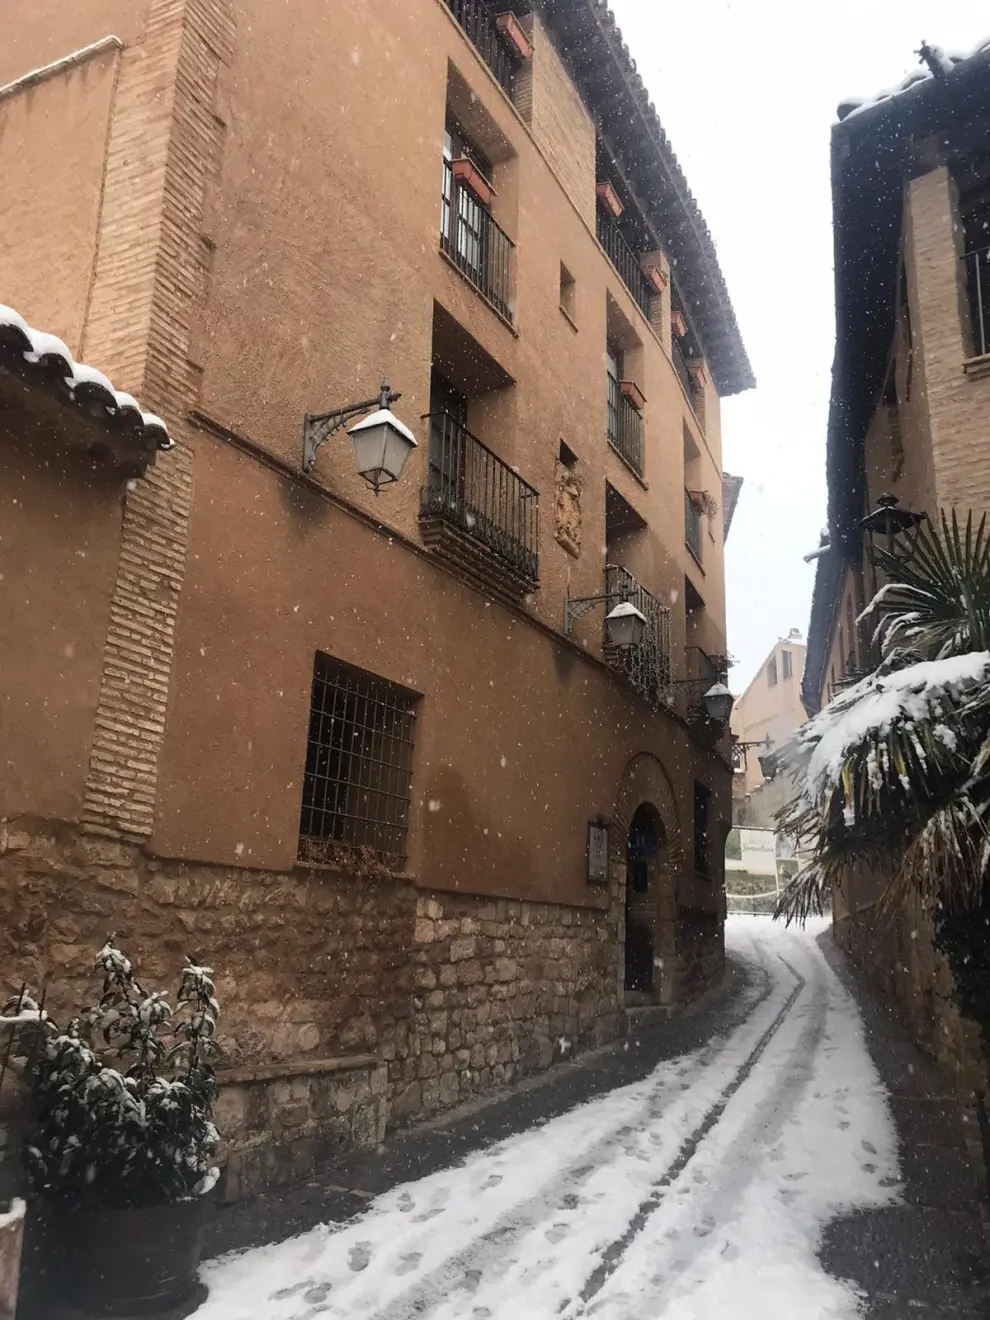 La tormenta Filomena llega a la provincia de Huesca